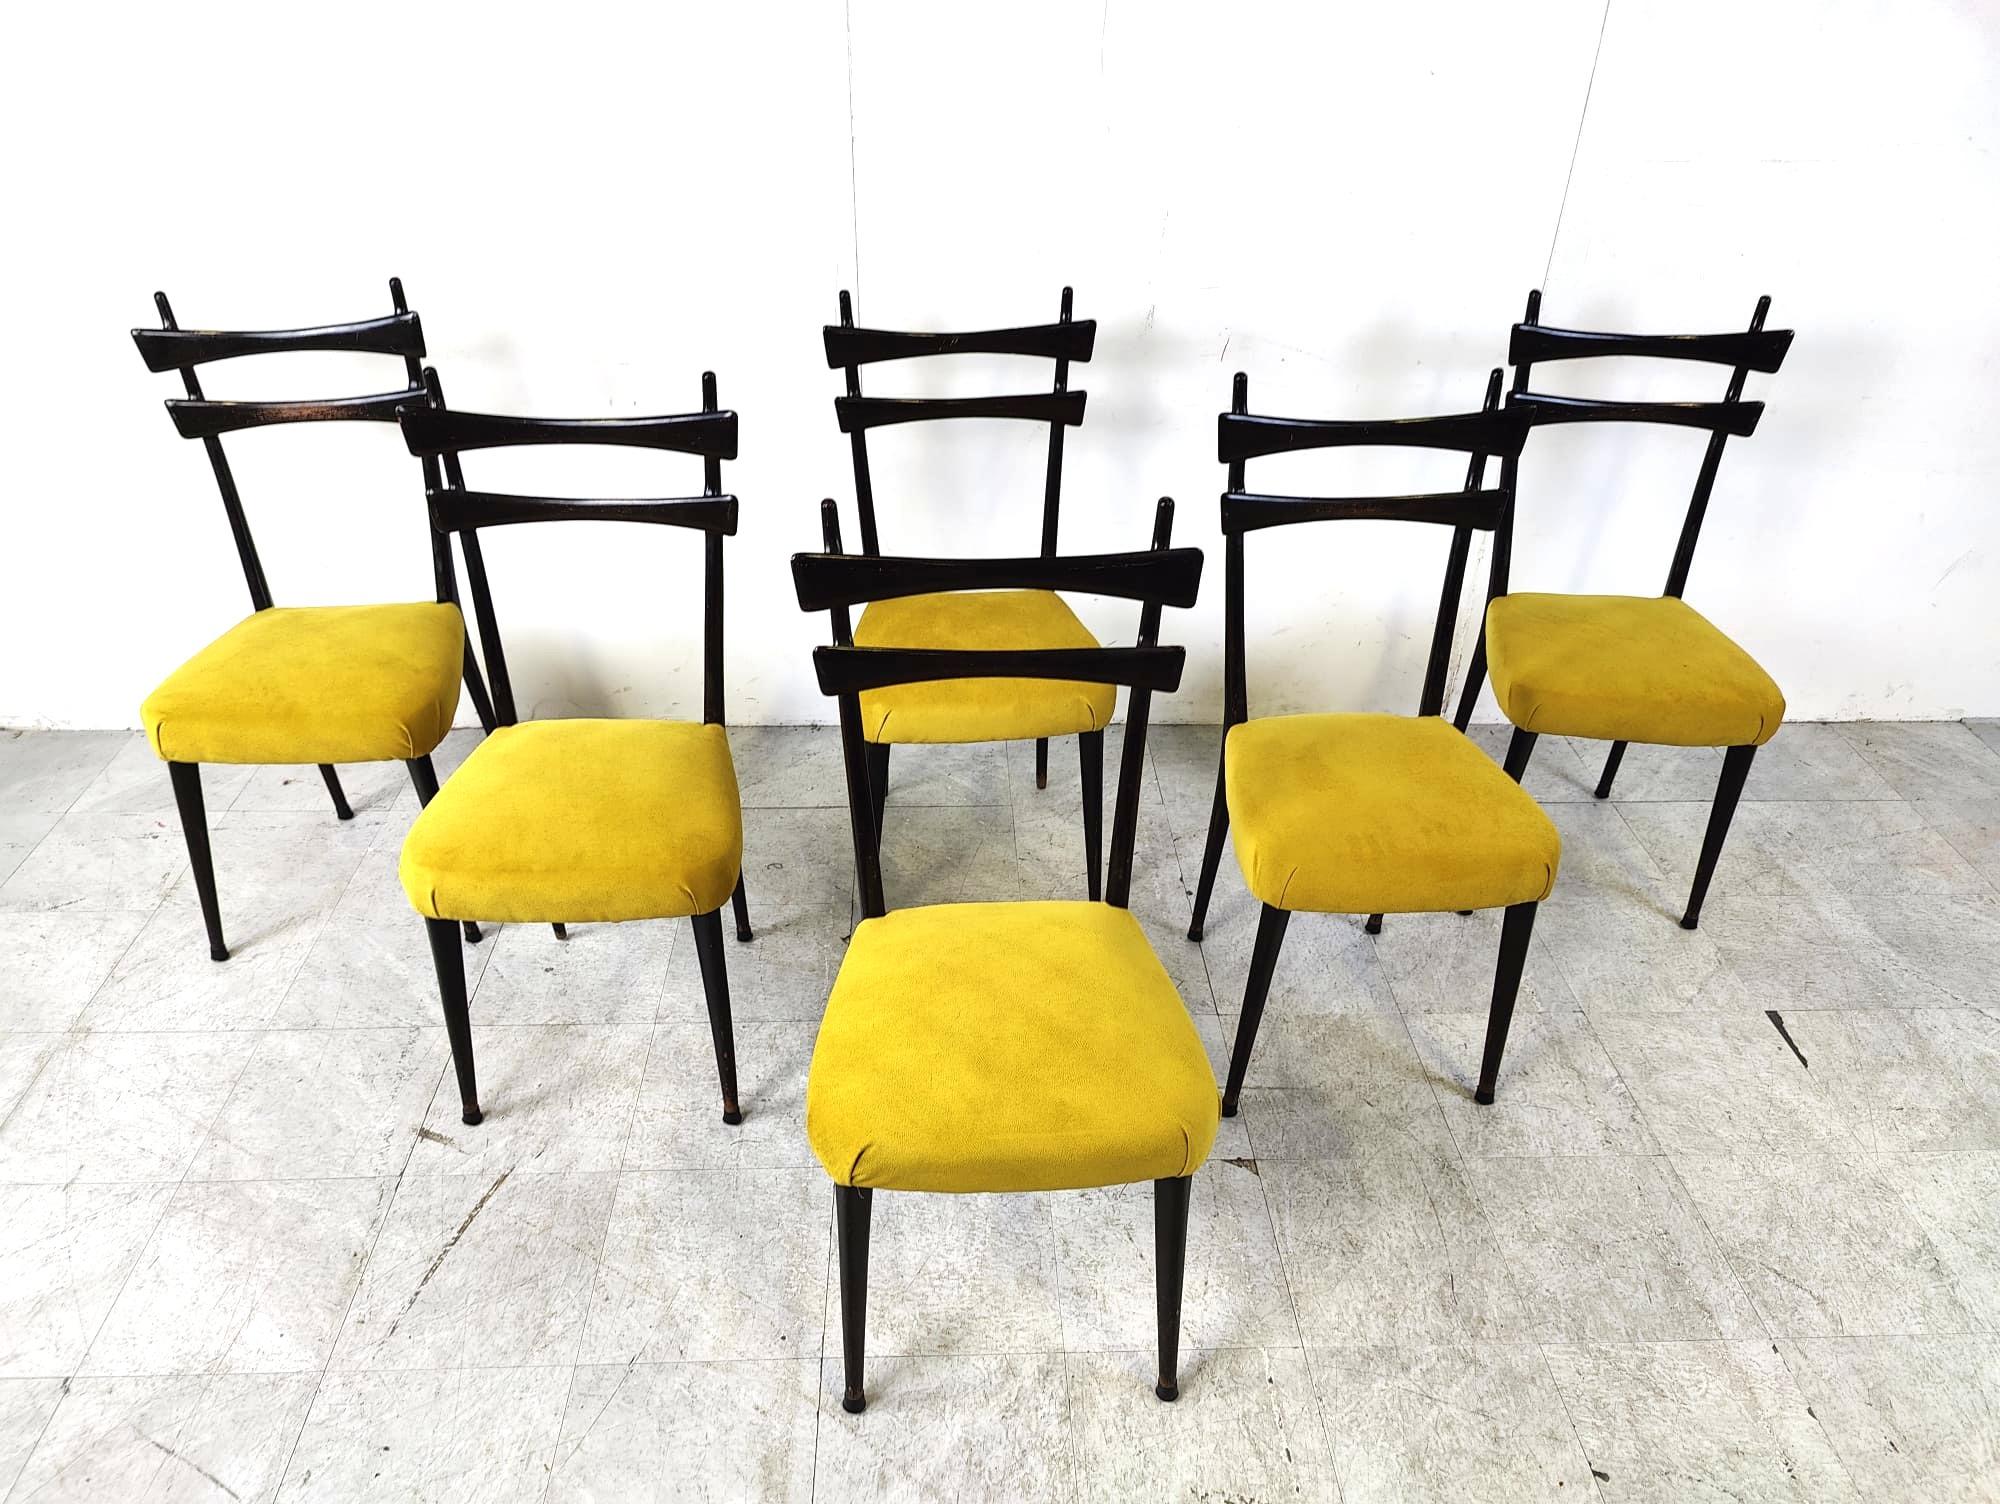 Chaises de salle à manger italiennes du milieu du siècle, fabriquées à partir d'un cadre en bois ébonisé incroyablement élégant et retapissé en tissu oker/jaune.

Magnifique design italien des années 1950 dans le style de Gio Ponti.

Ils sont très